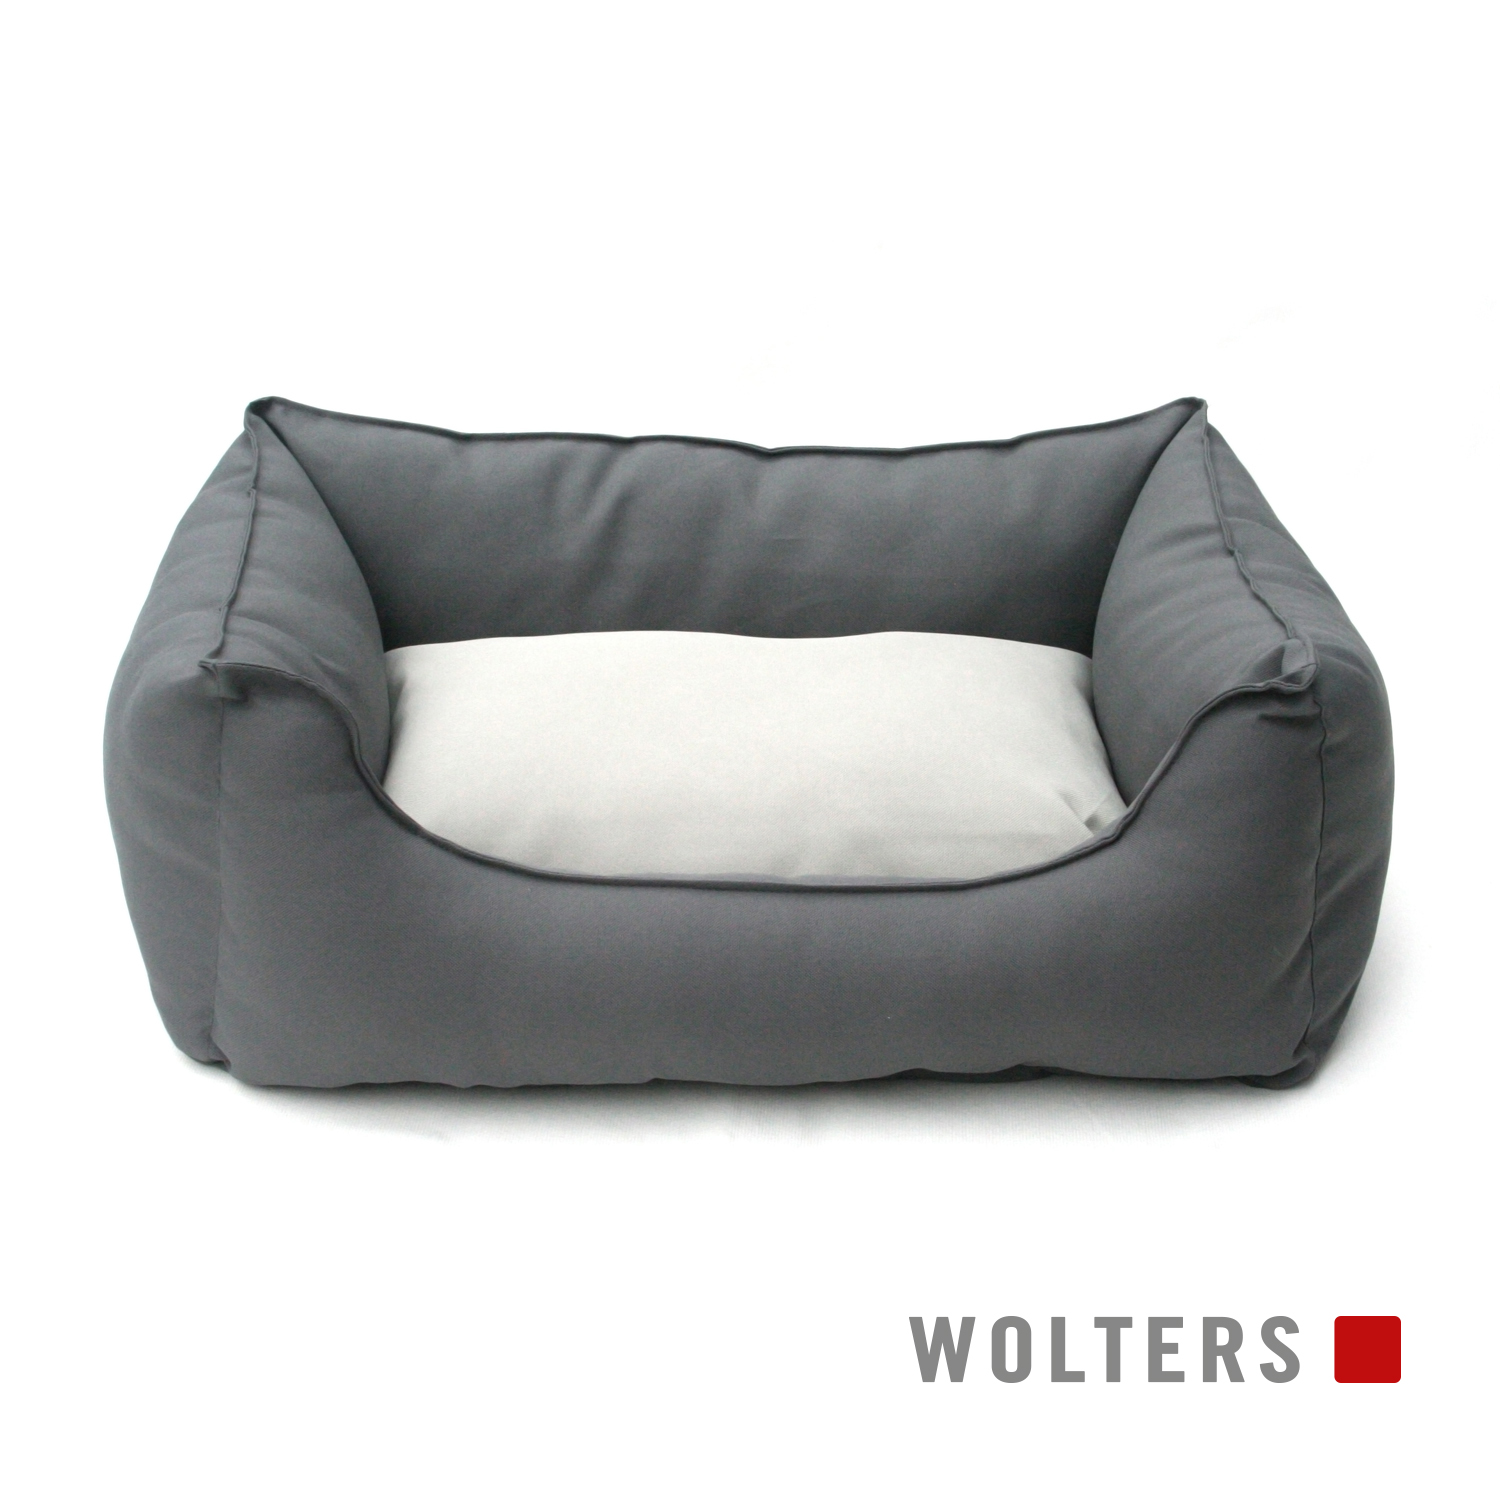 Wolters Basic Dog Lounge - anthrazit/kiesel